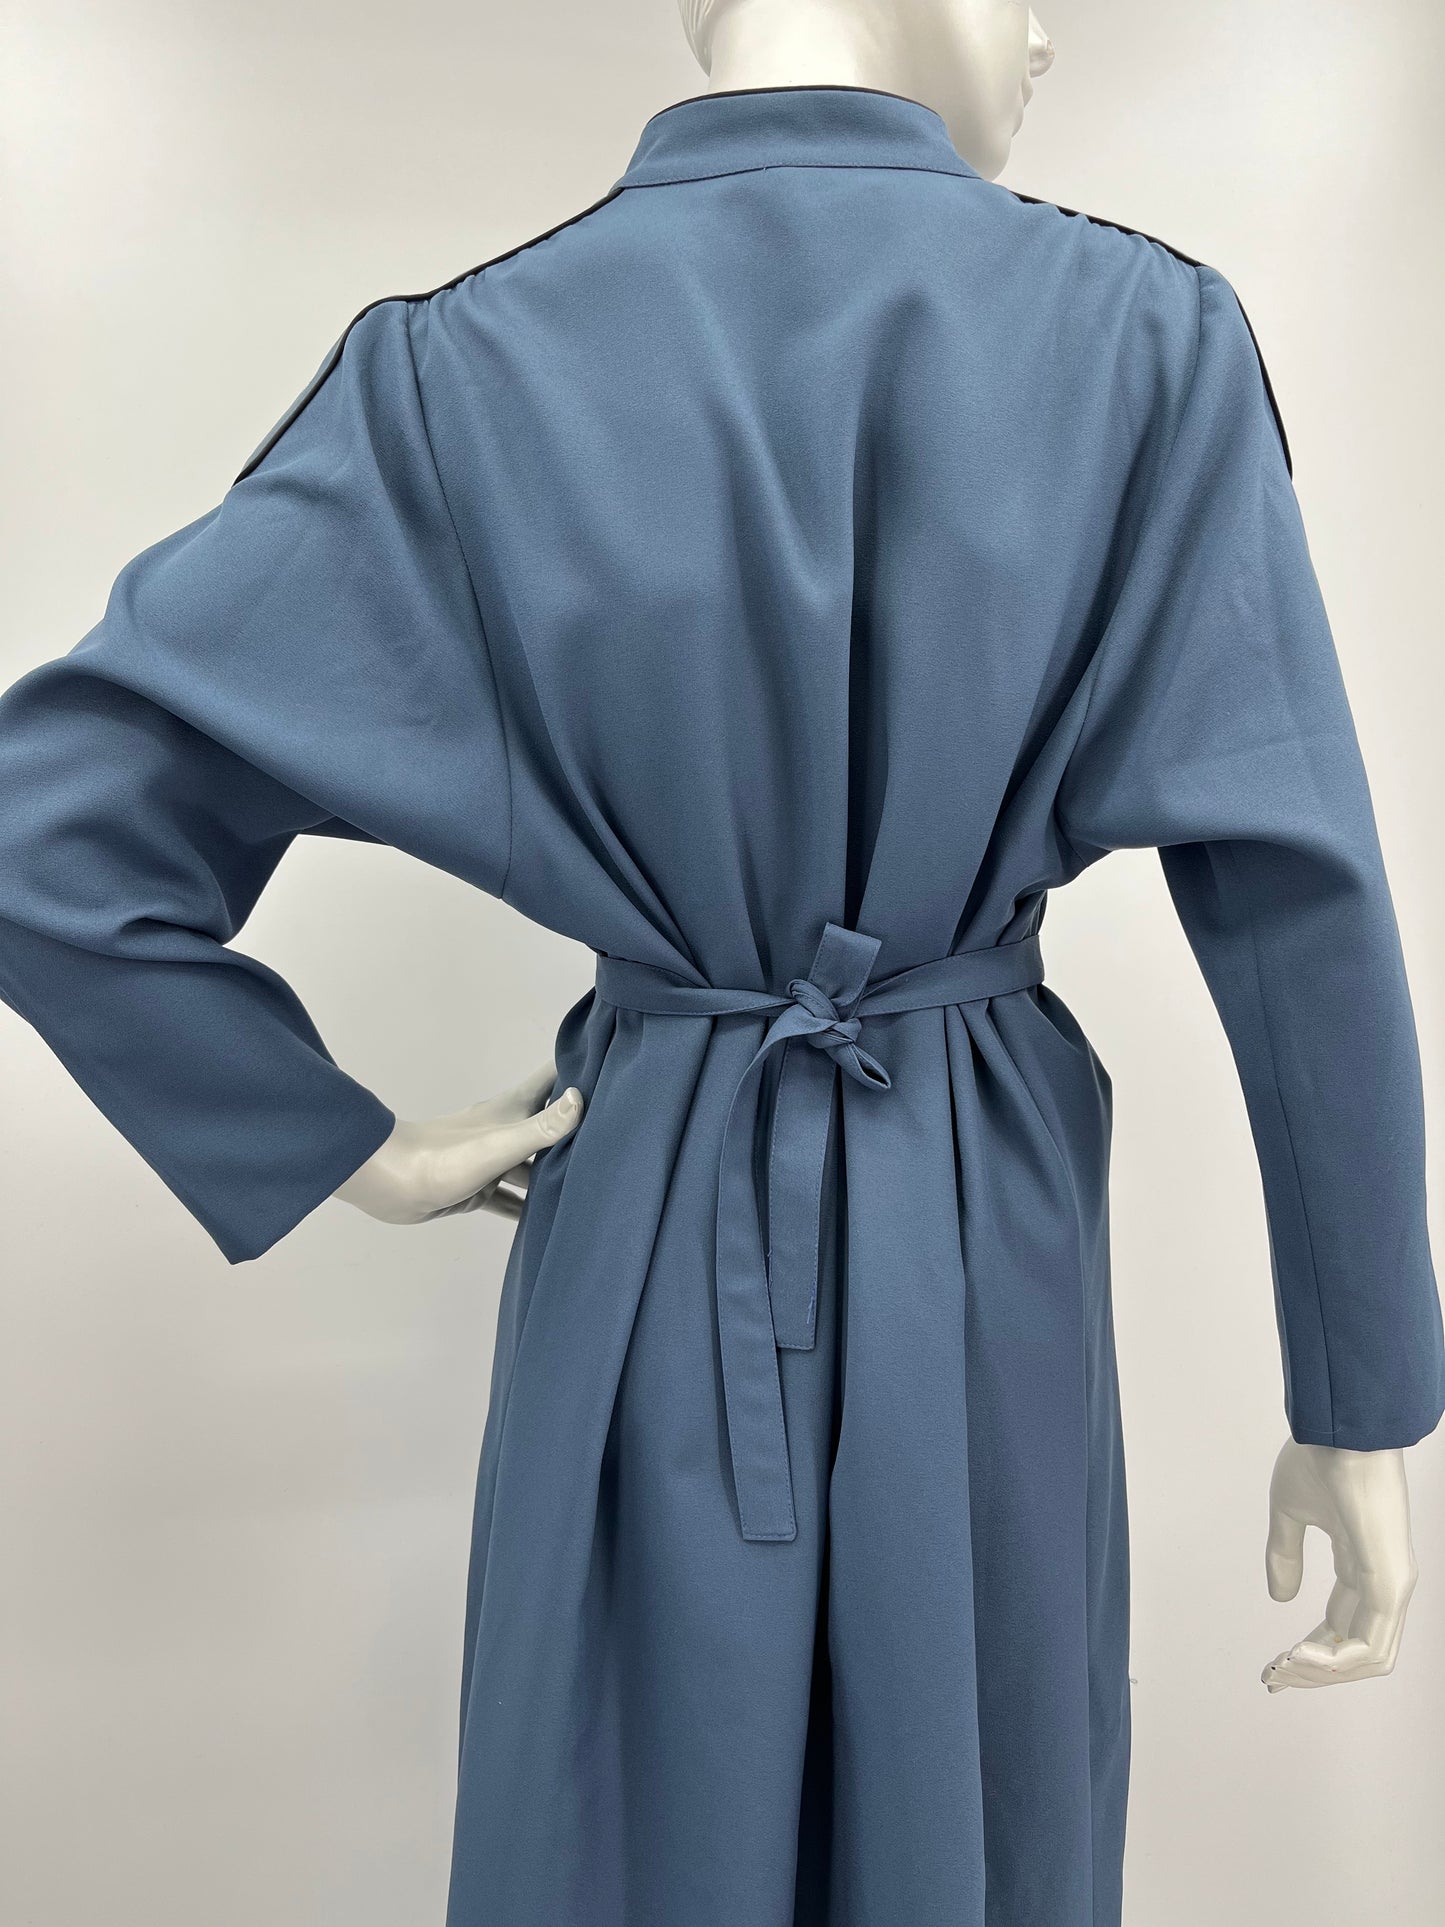 Chixpuku, sininen mekko ja vyö, 80-90-luku, koko 40